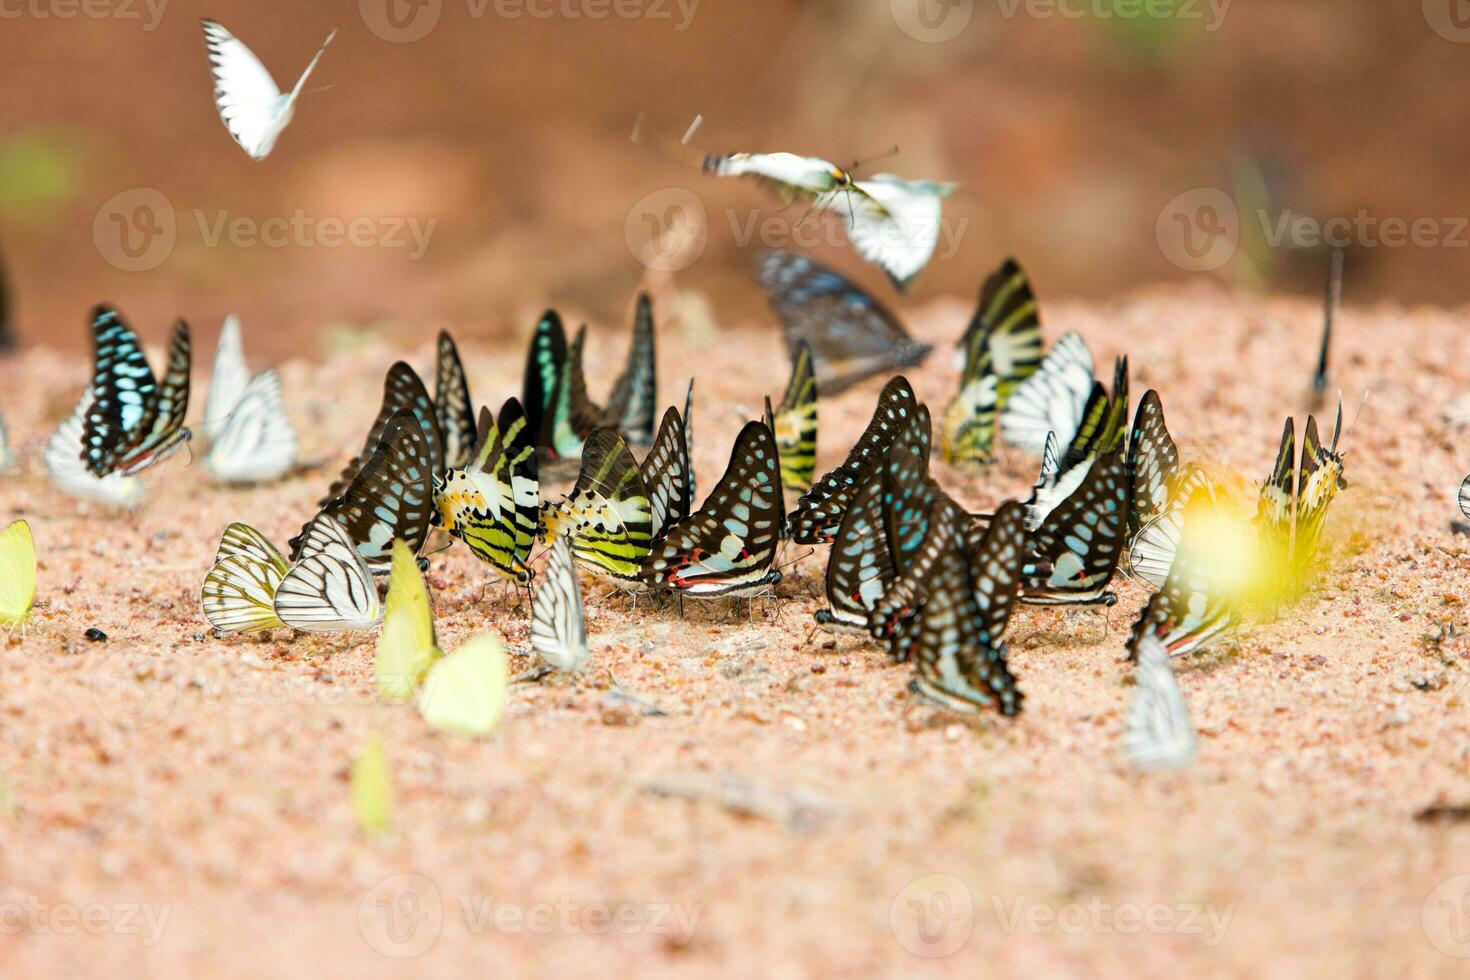 gruppo di farfalle Comune ghiandaia mangiato minerale su sabbia. foto